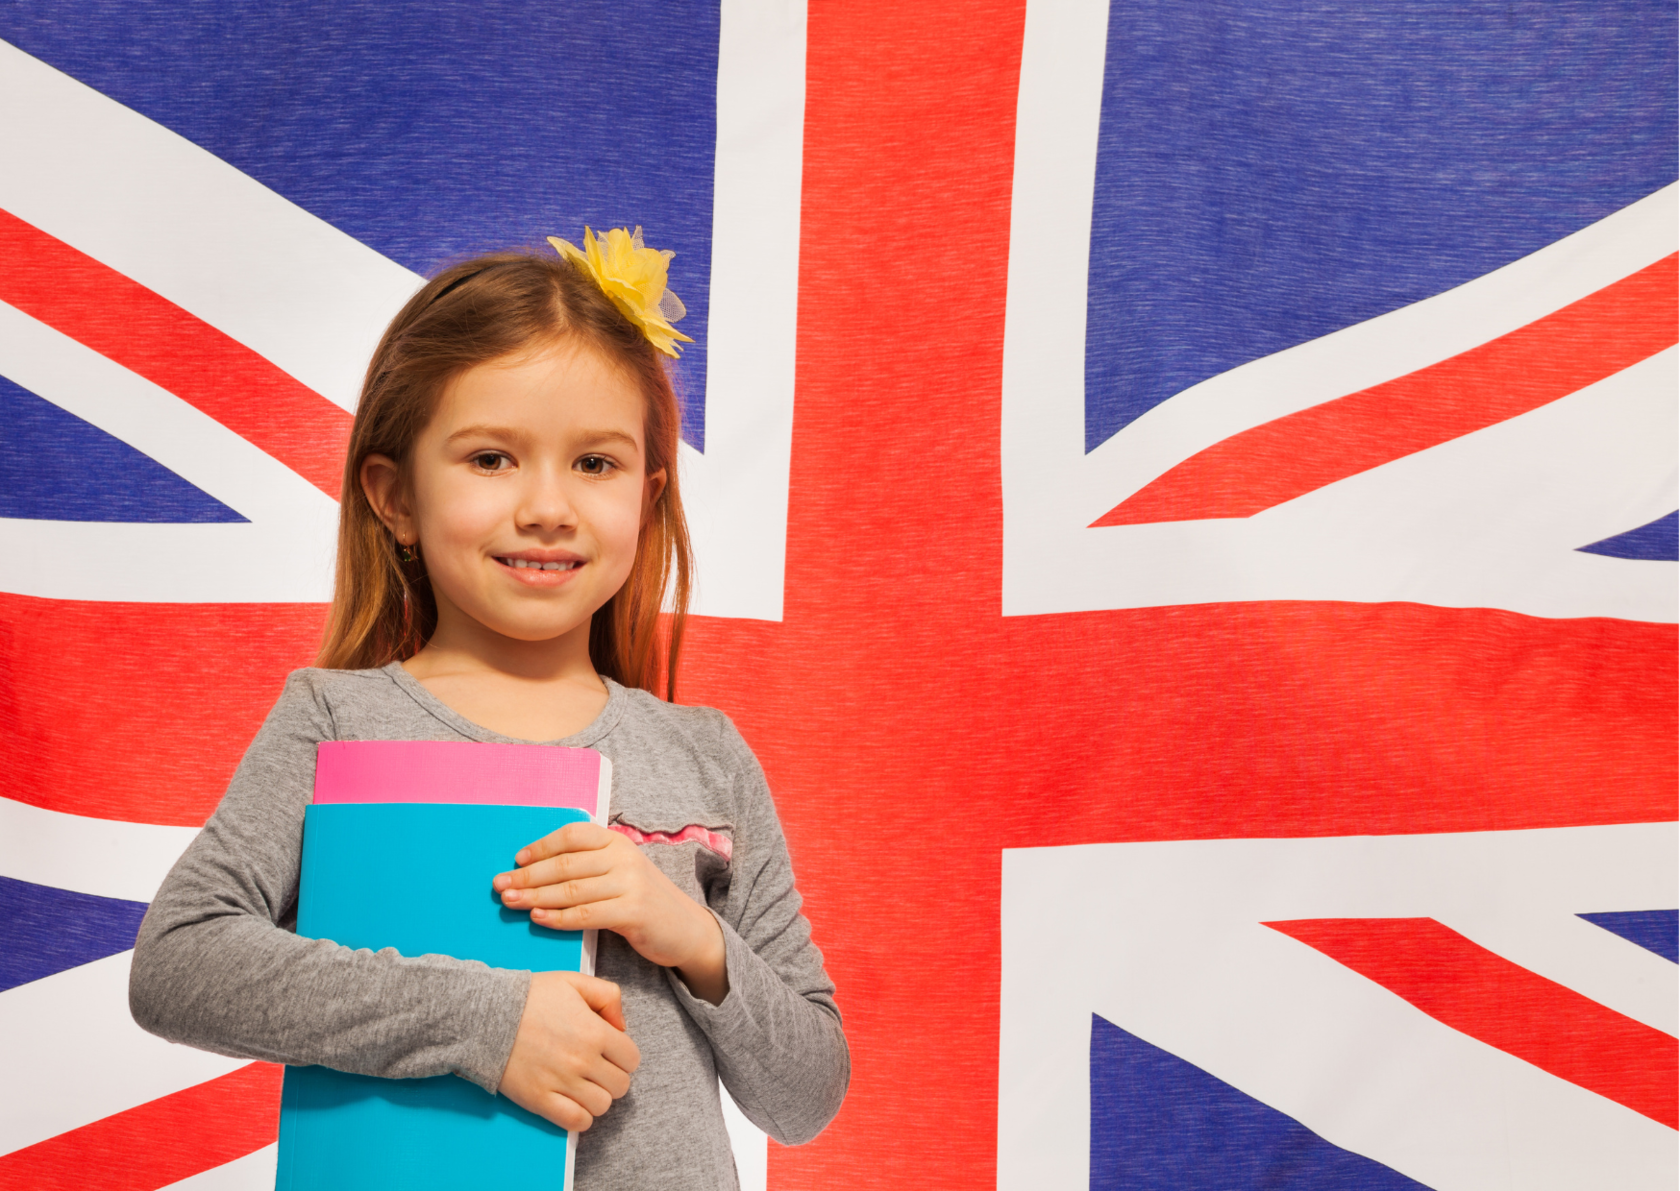 Да детка на английском. Английский для детей. Дети учат английский. Английский язык для детей. Ребенок с британским флагом.